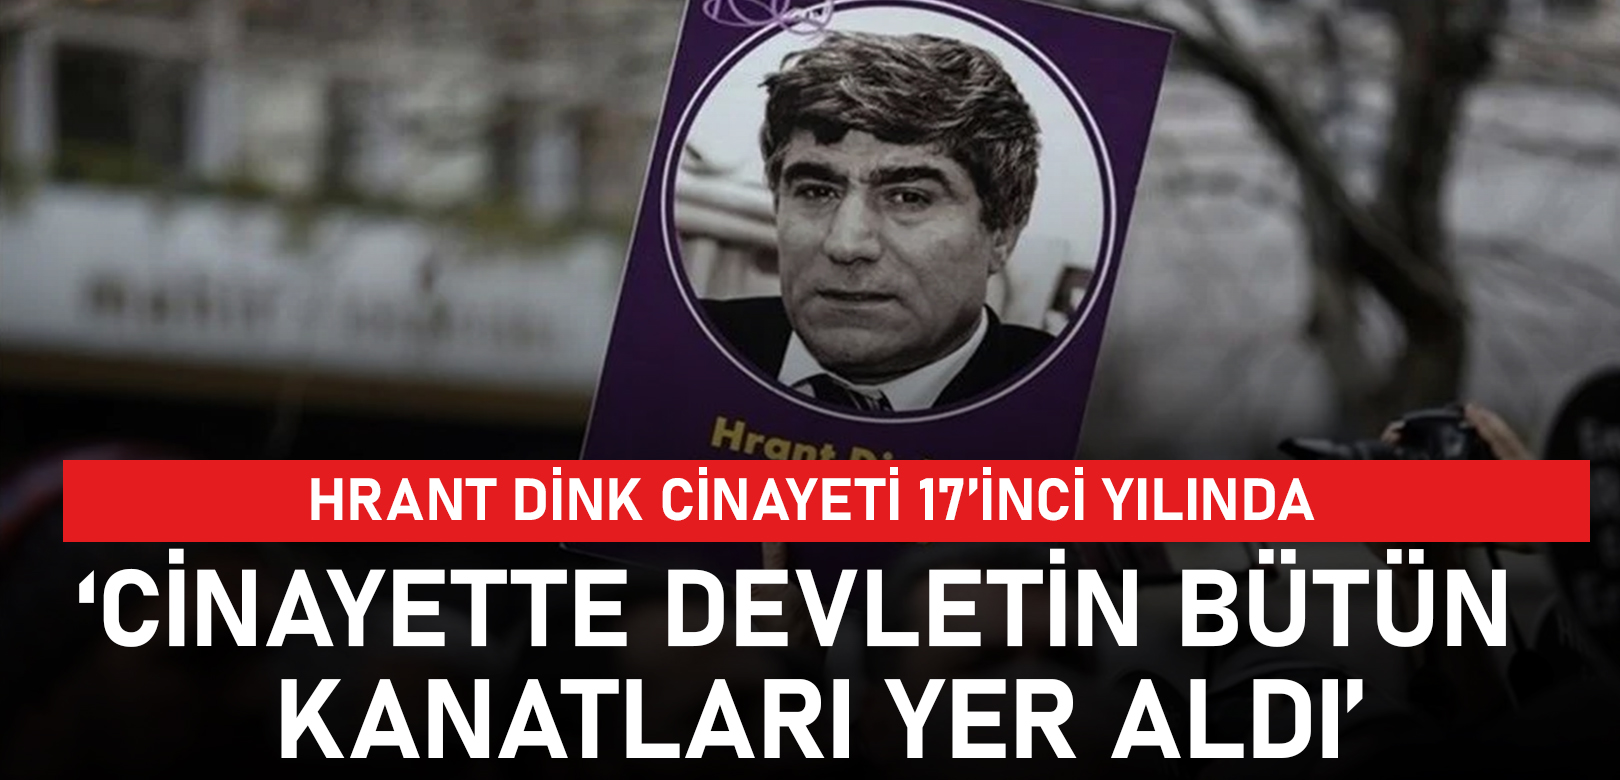 Yetvart Danzikyan: Hrant Dink cinayetinde devletin bütün kanatları yer aldı